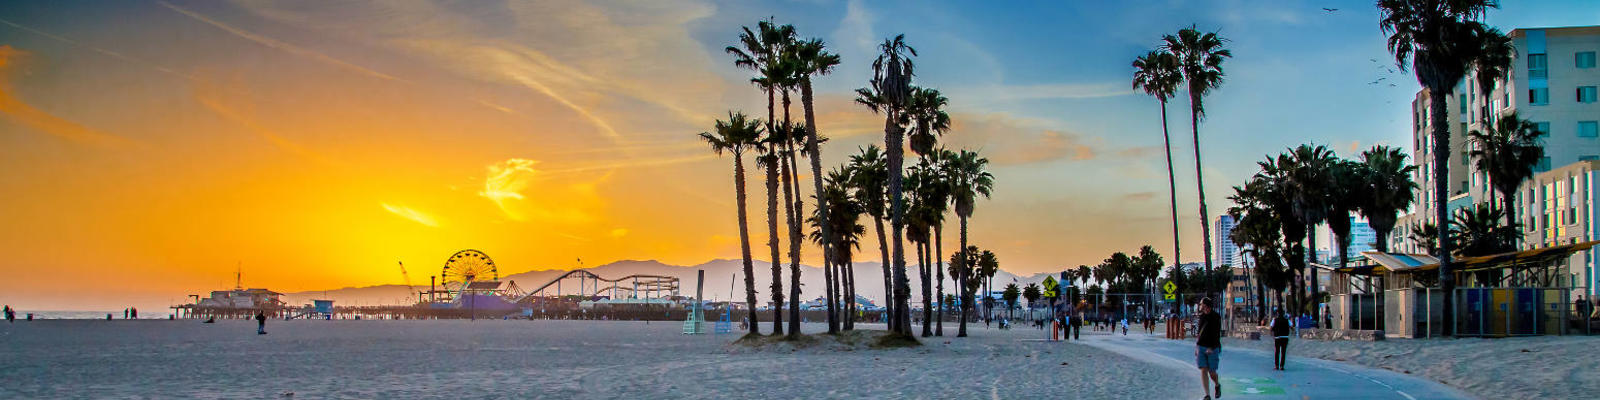 LA's Venice Beach, with Santa Monica Pier in the distance.